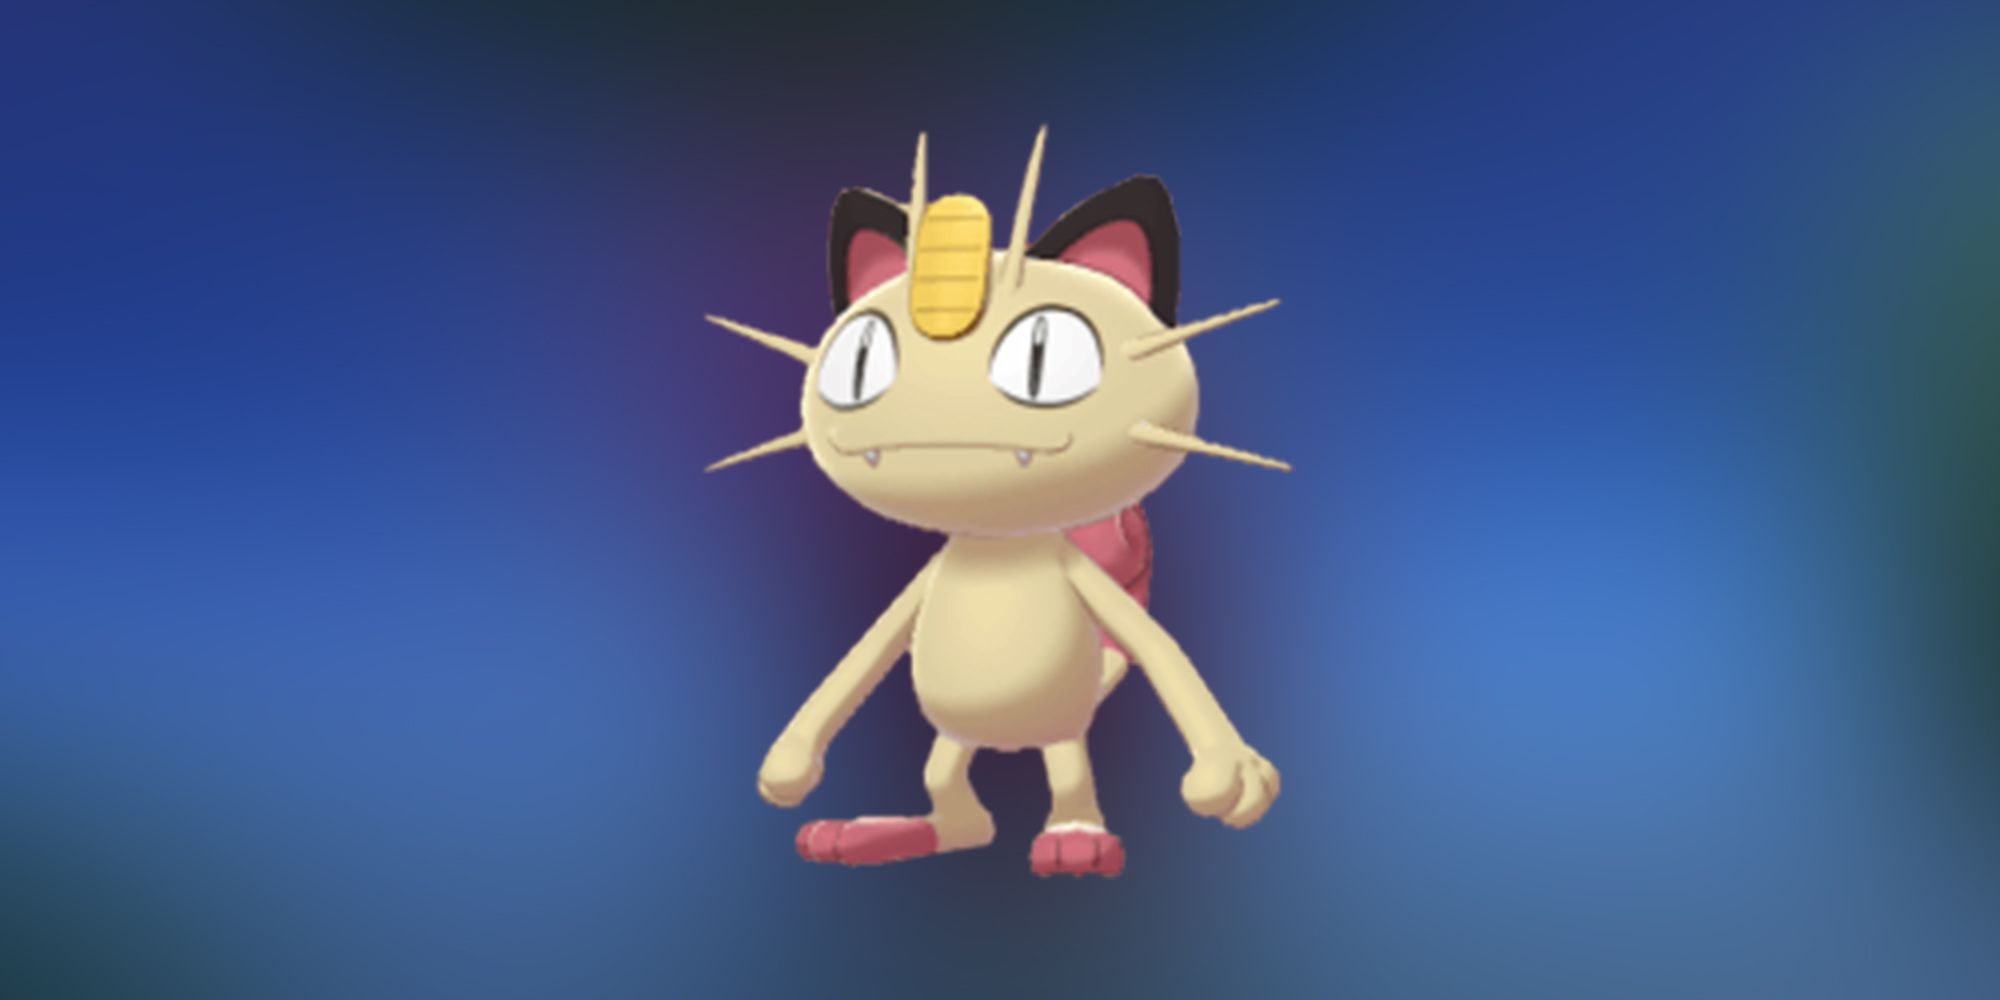 How to Find (& Catch) Shiny Meowth in Pokémon GO